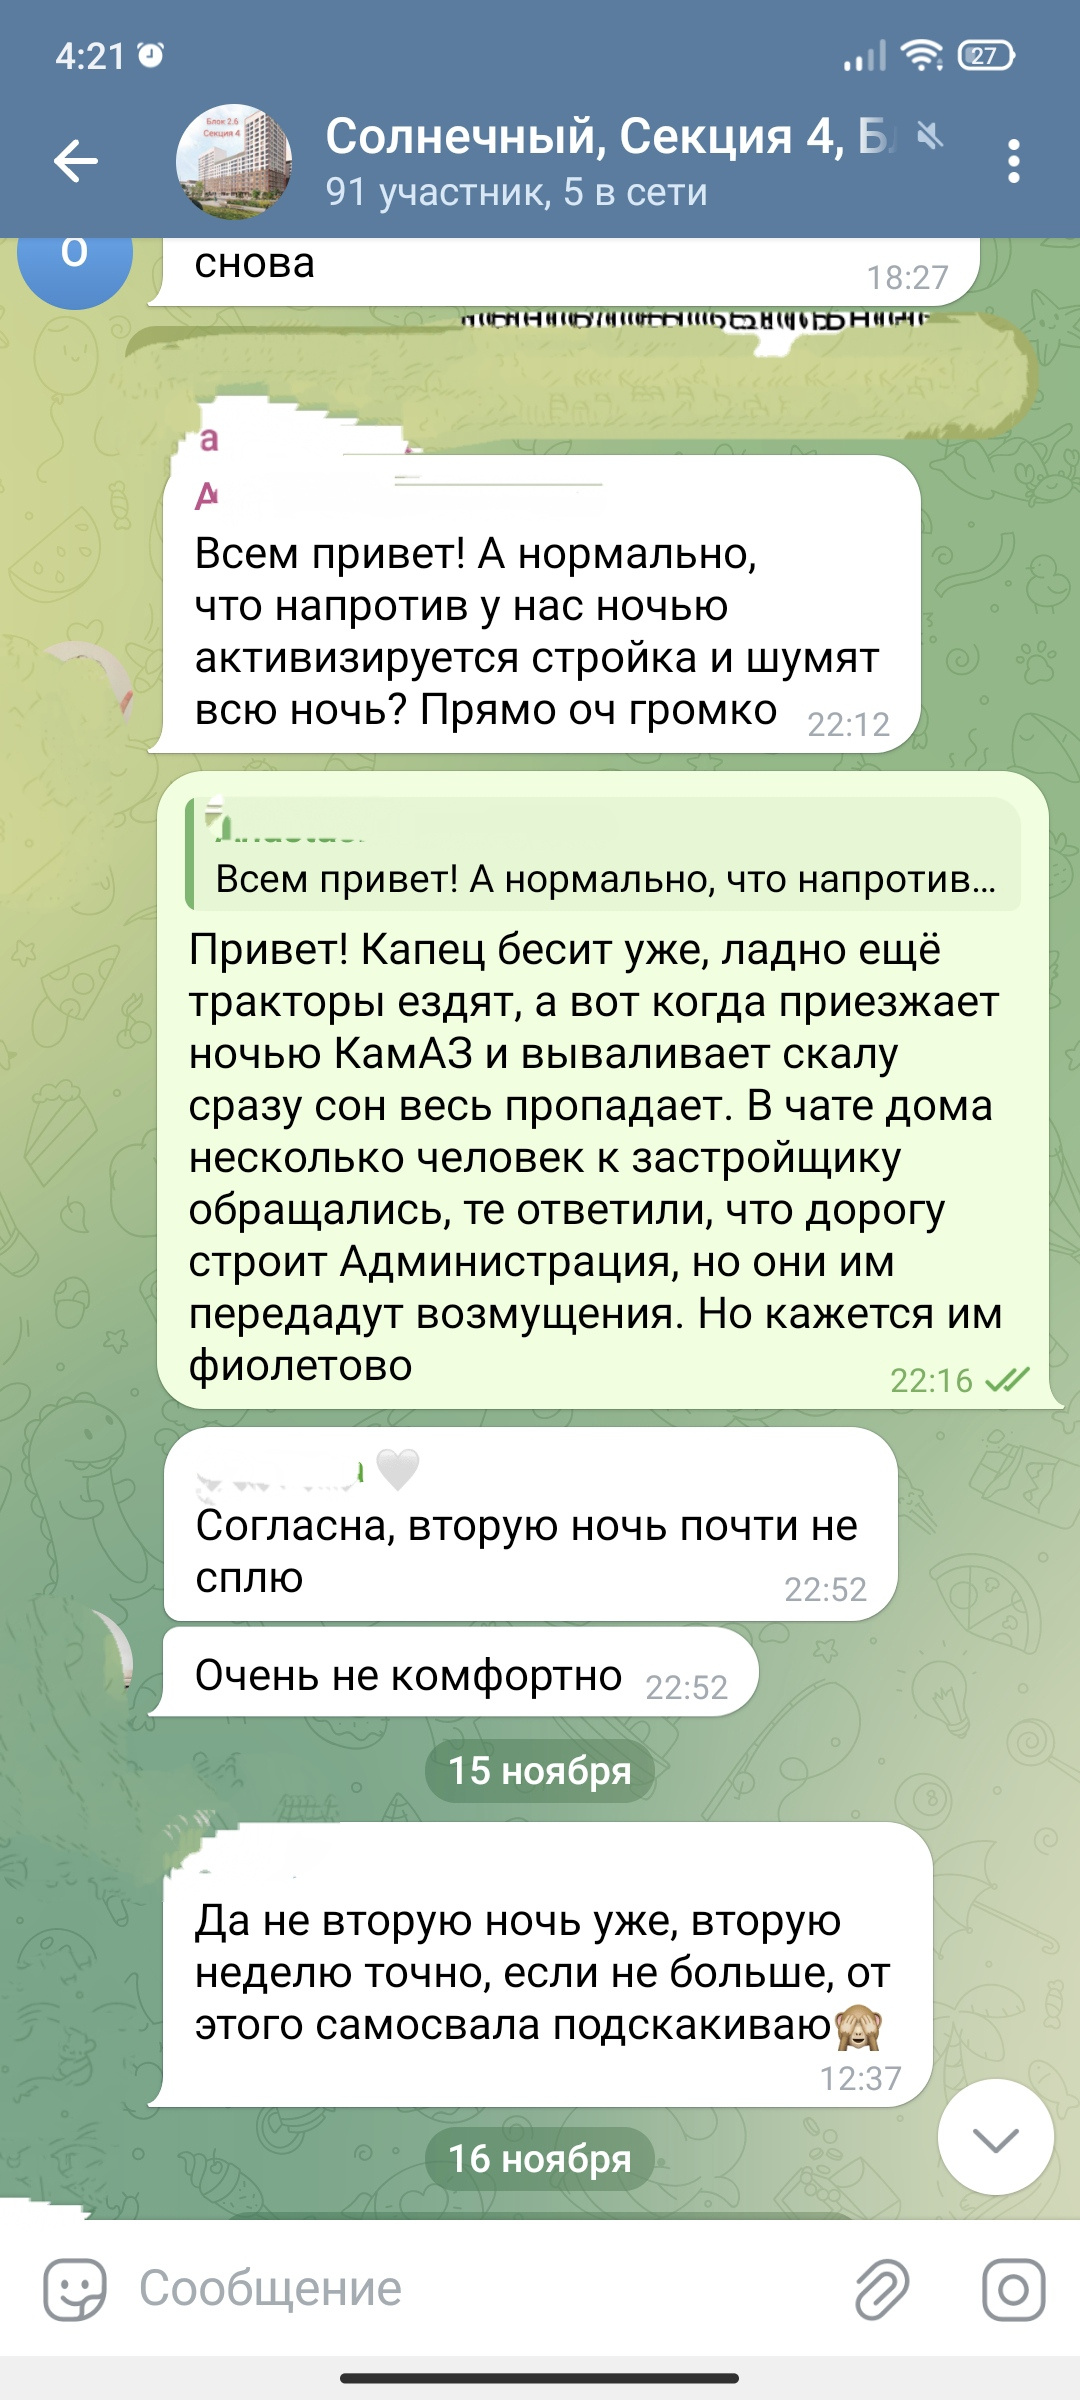 «Всю ночь подскакиваешь»: в Екатеринбурге жители новостроек потеряли сон из-за адского шума